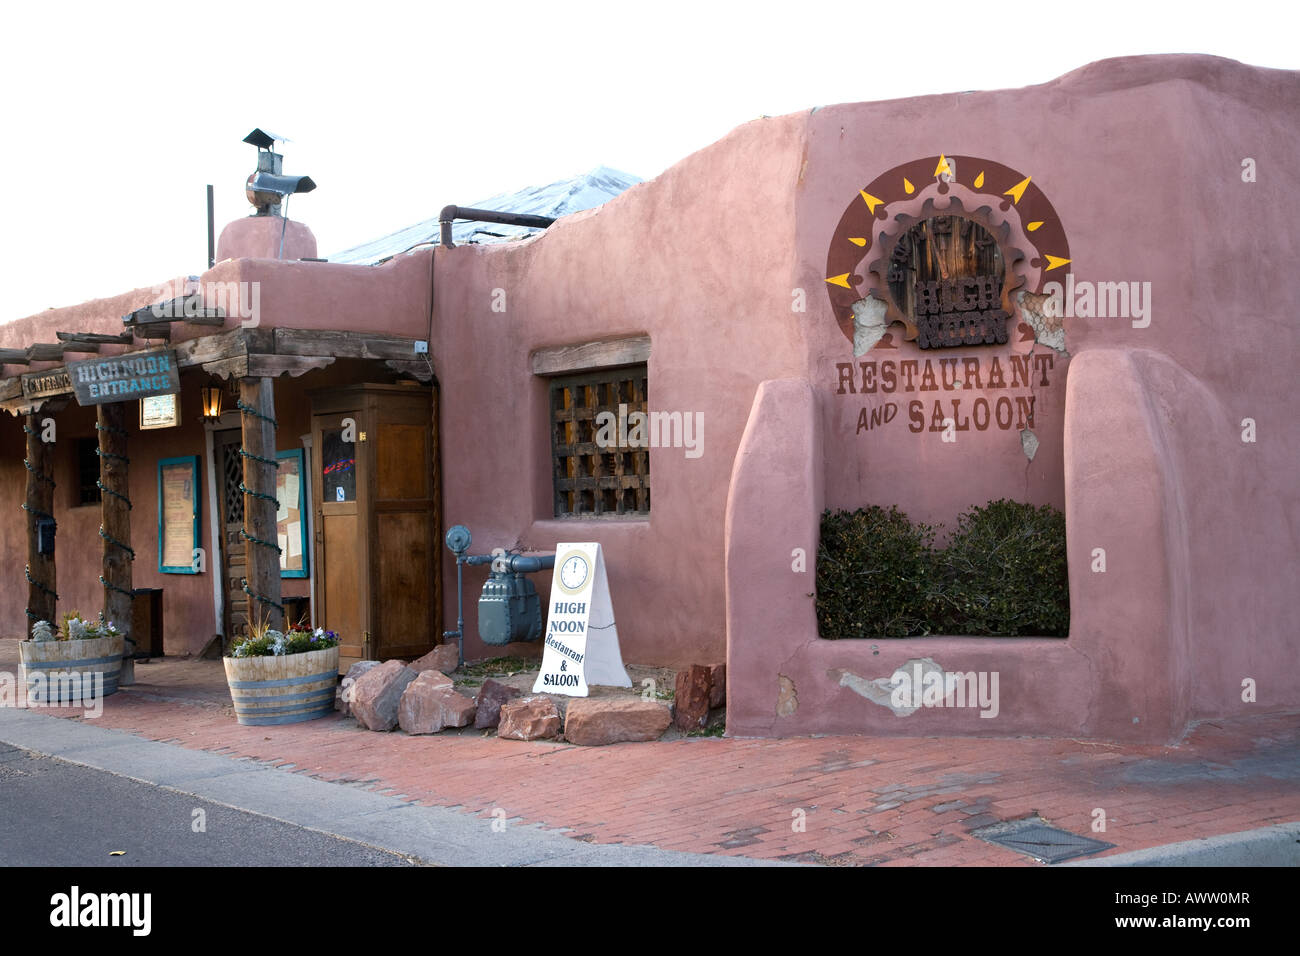 Red Adobe Walls of High Noon  Restaurant Albuquerque ew Mexico Stock Photo